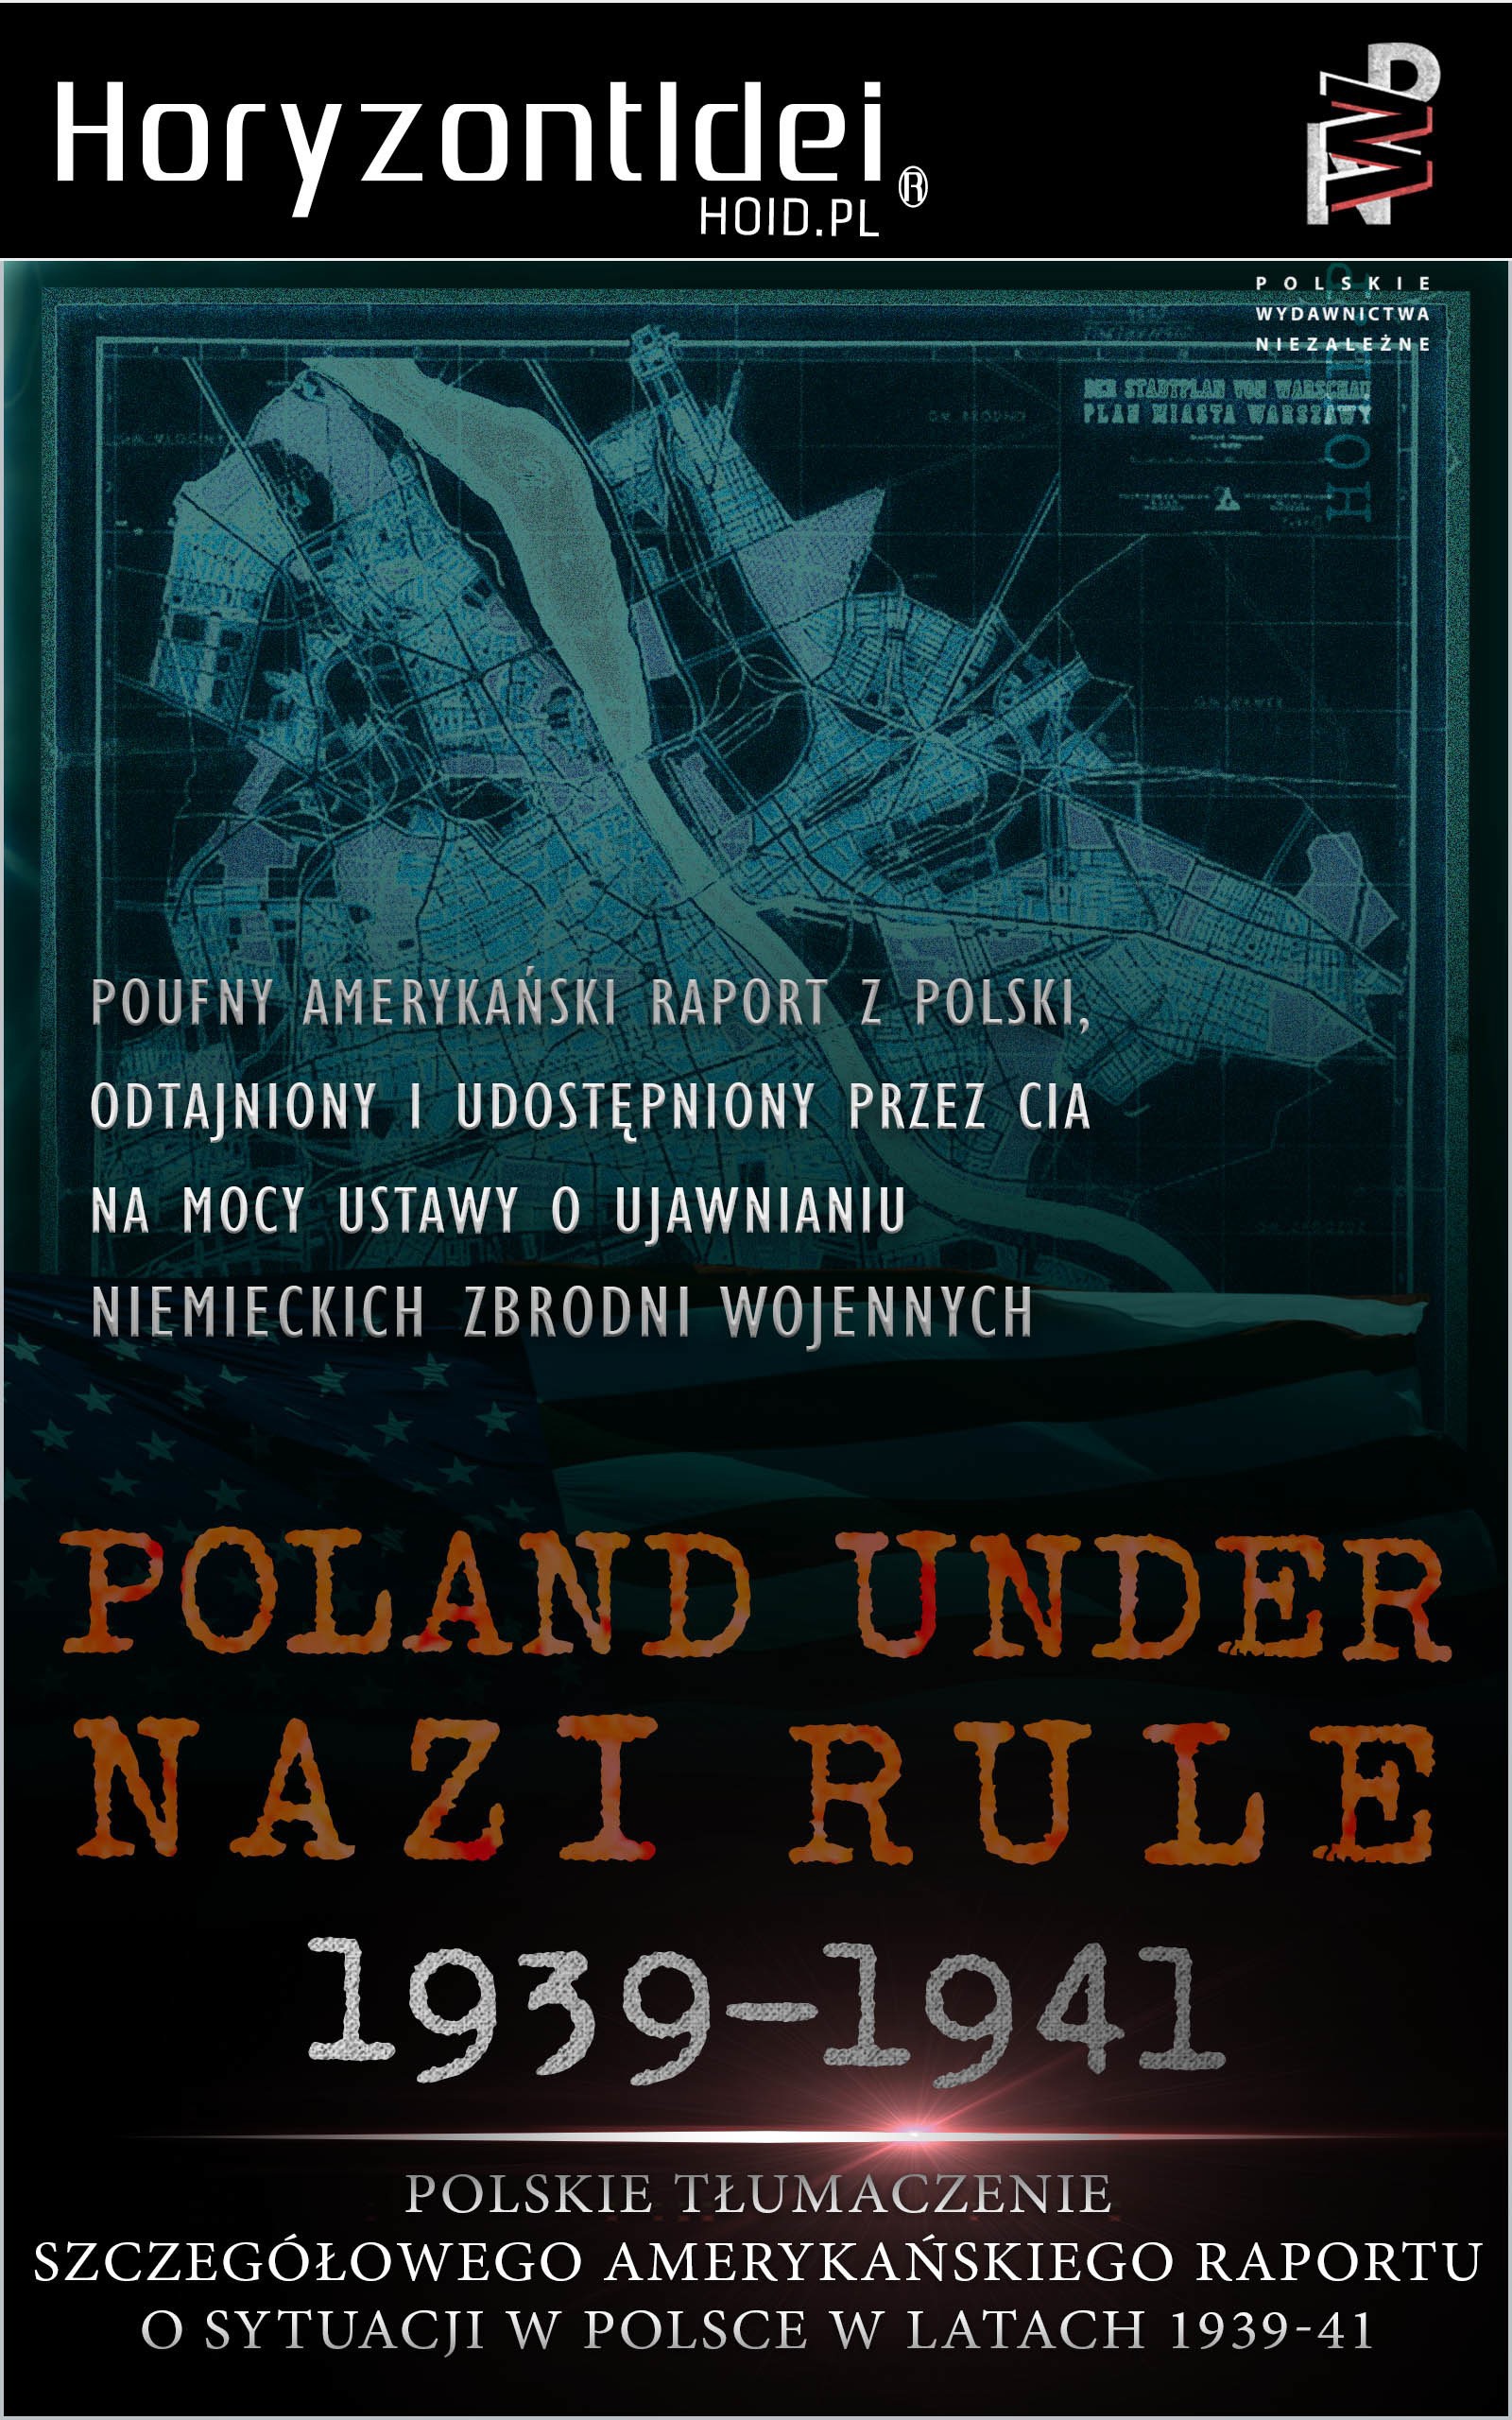 Okładka:[1939-1941] Poland under nazi rule. Szczegółowy amerykański raport o sytuacji w Polsce w latach 1939-1941 